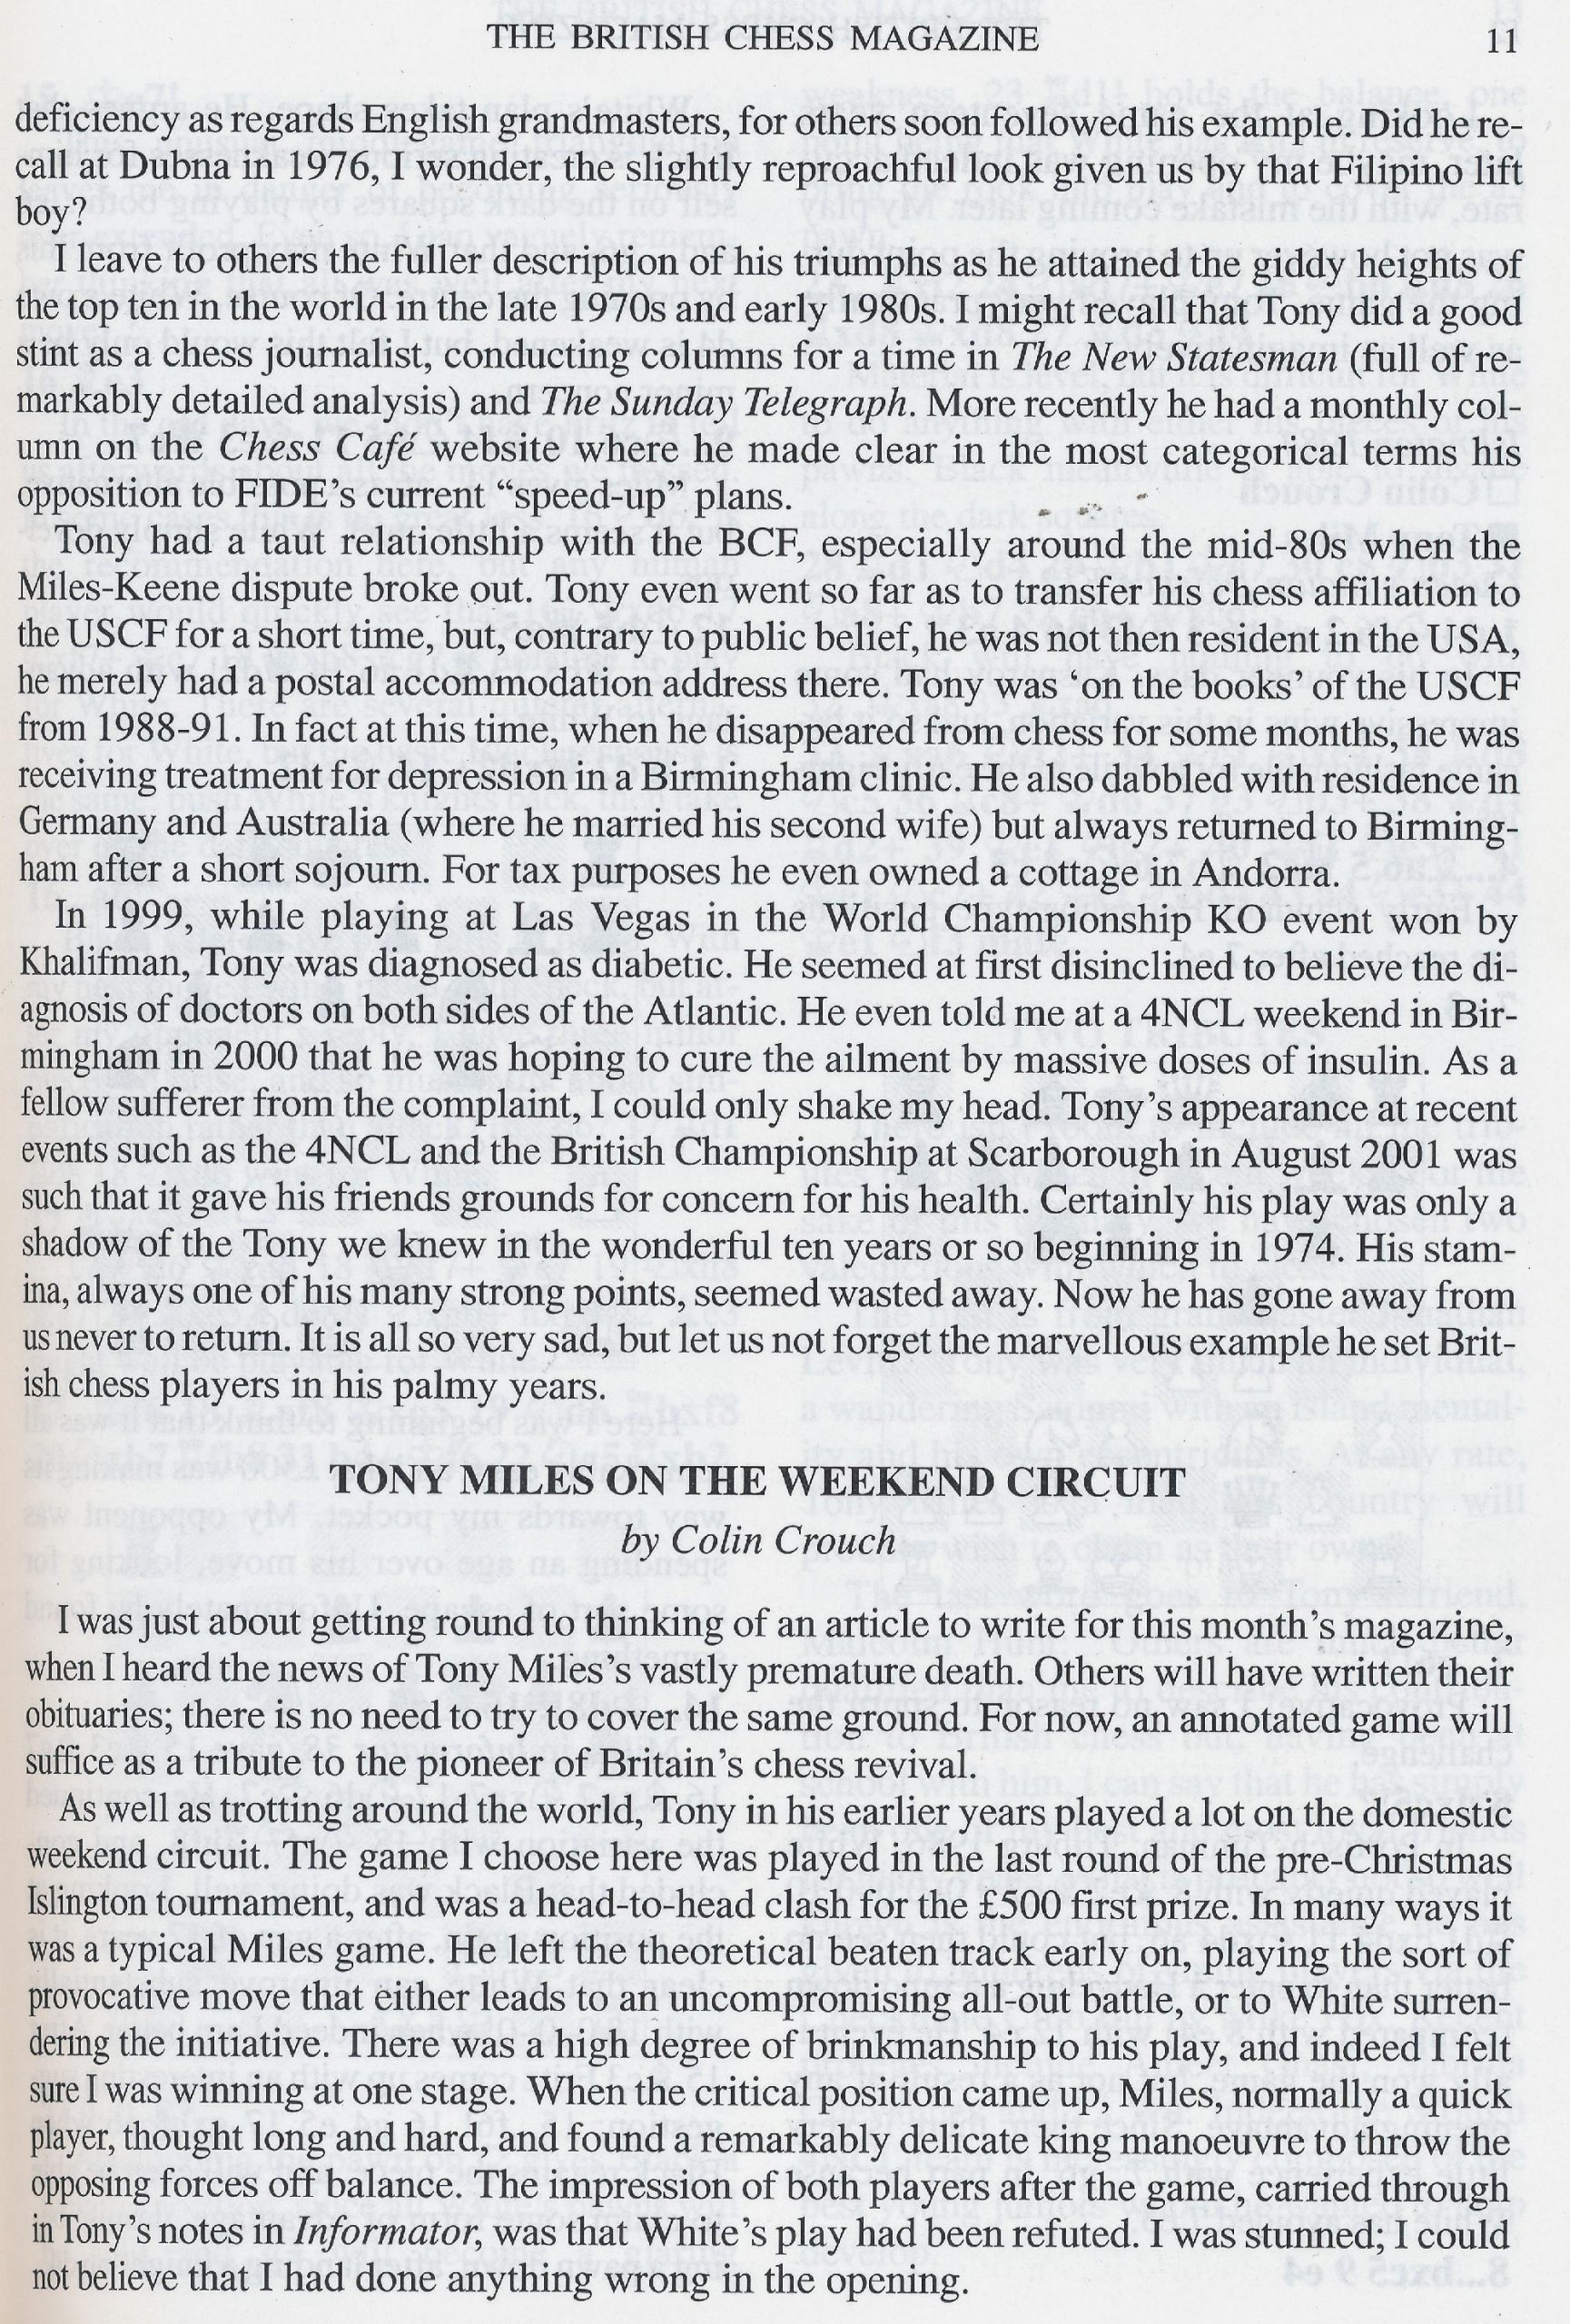 British Chess Magazine, Volume CXXII (122, 2002), Number 1 (January) pp. 6-13